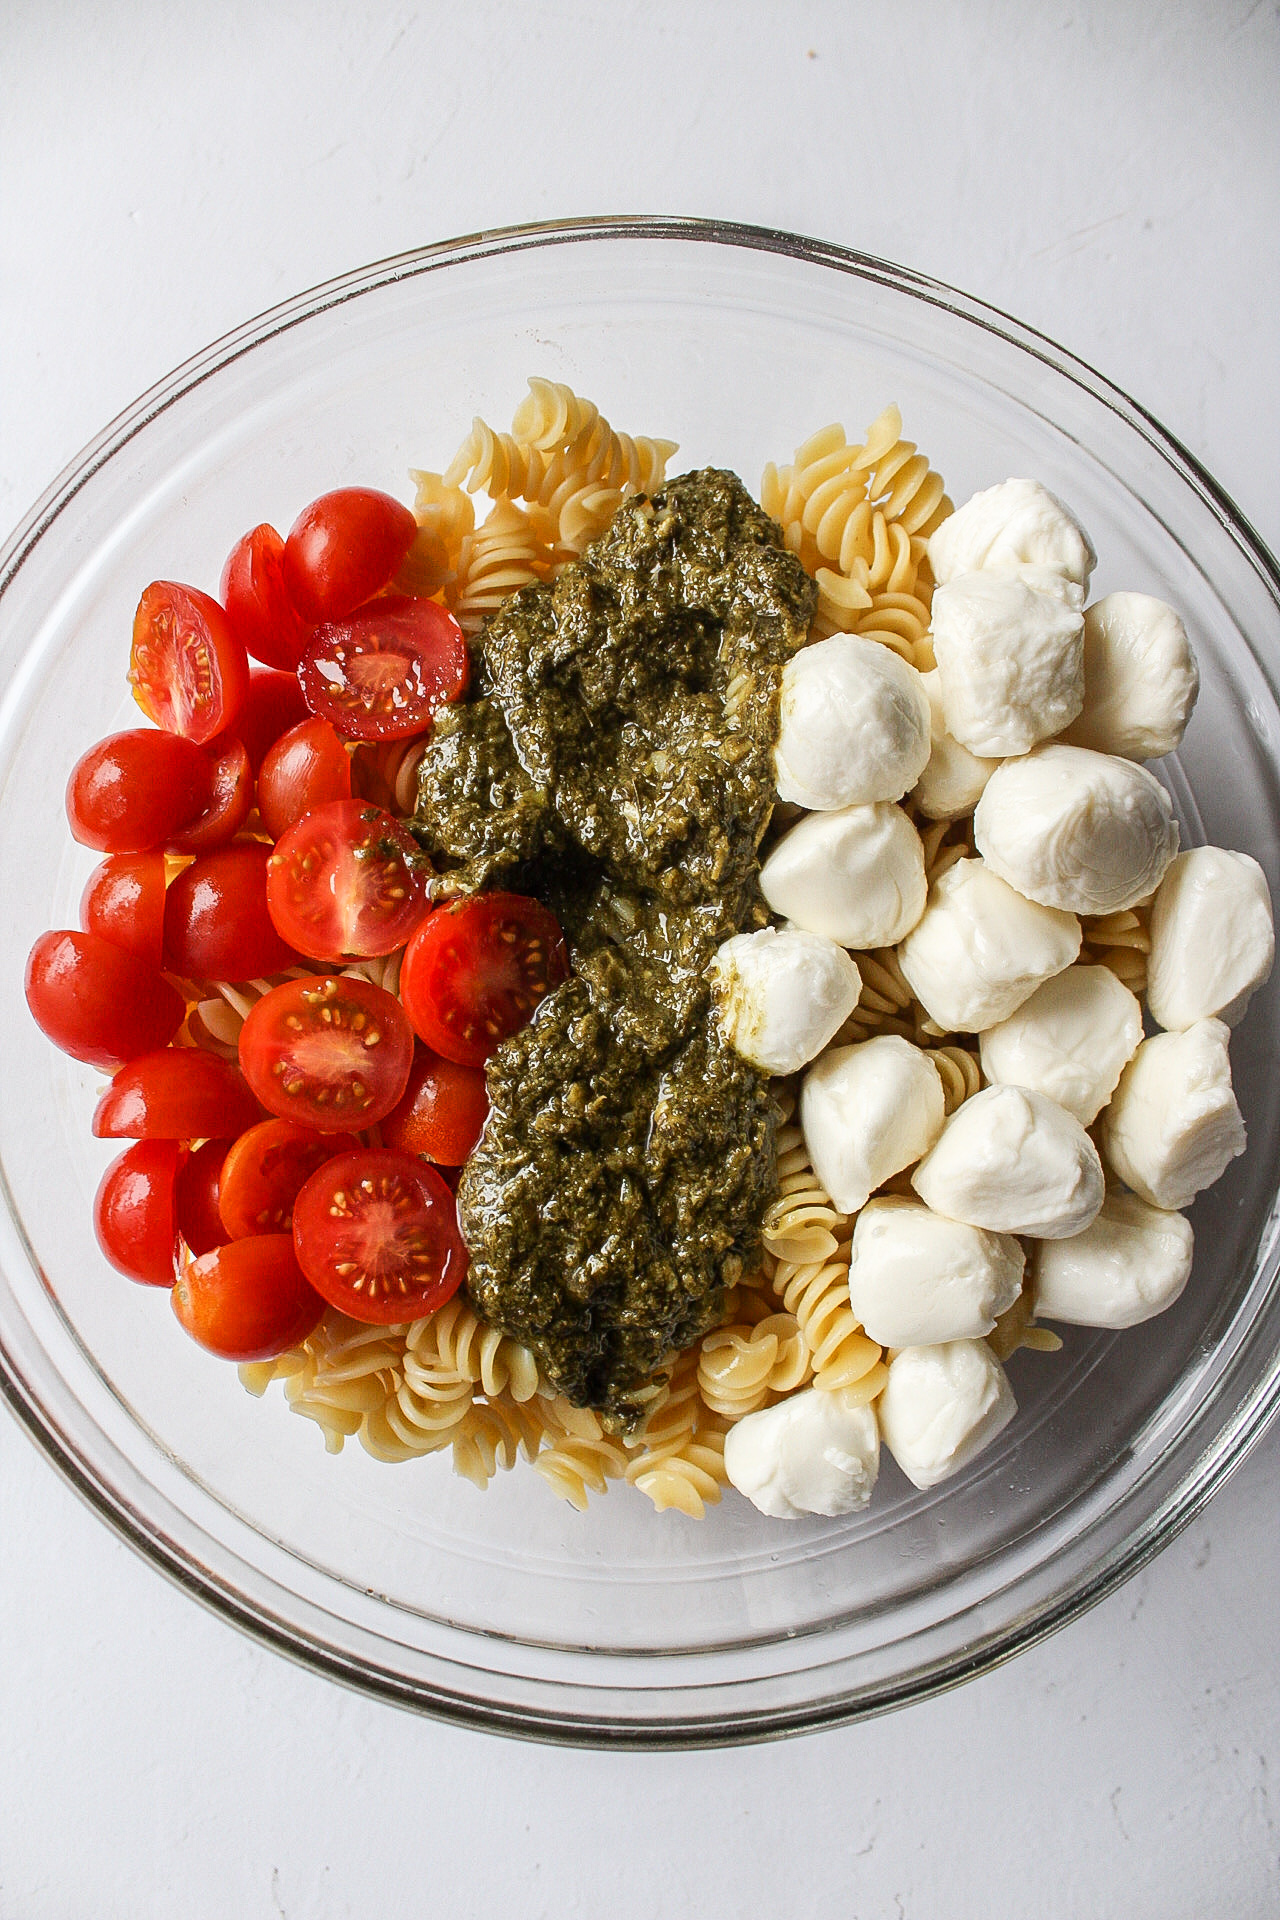 pesto, mozzarella, tomatoes, and pasta in a bowl